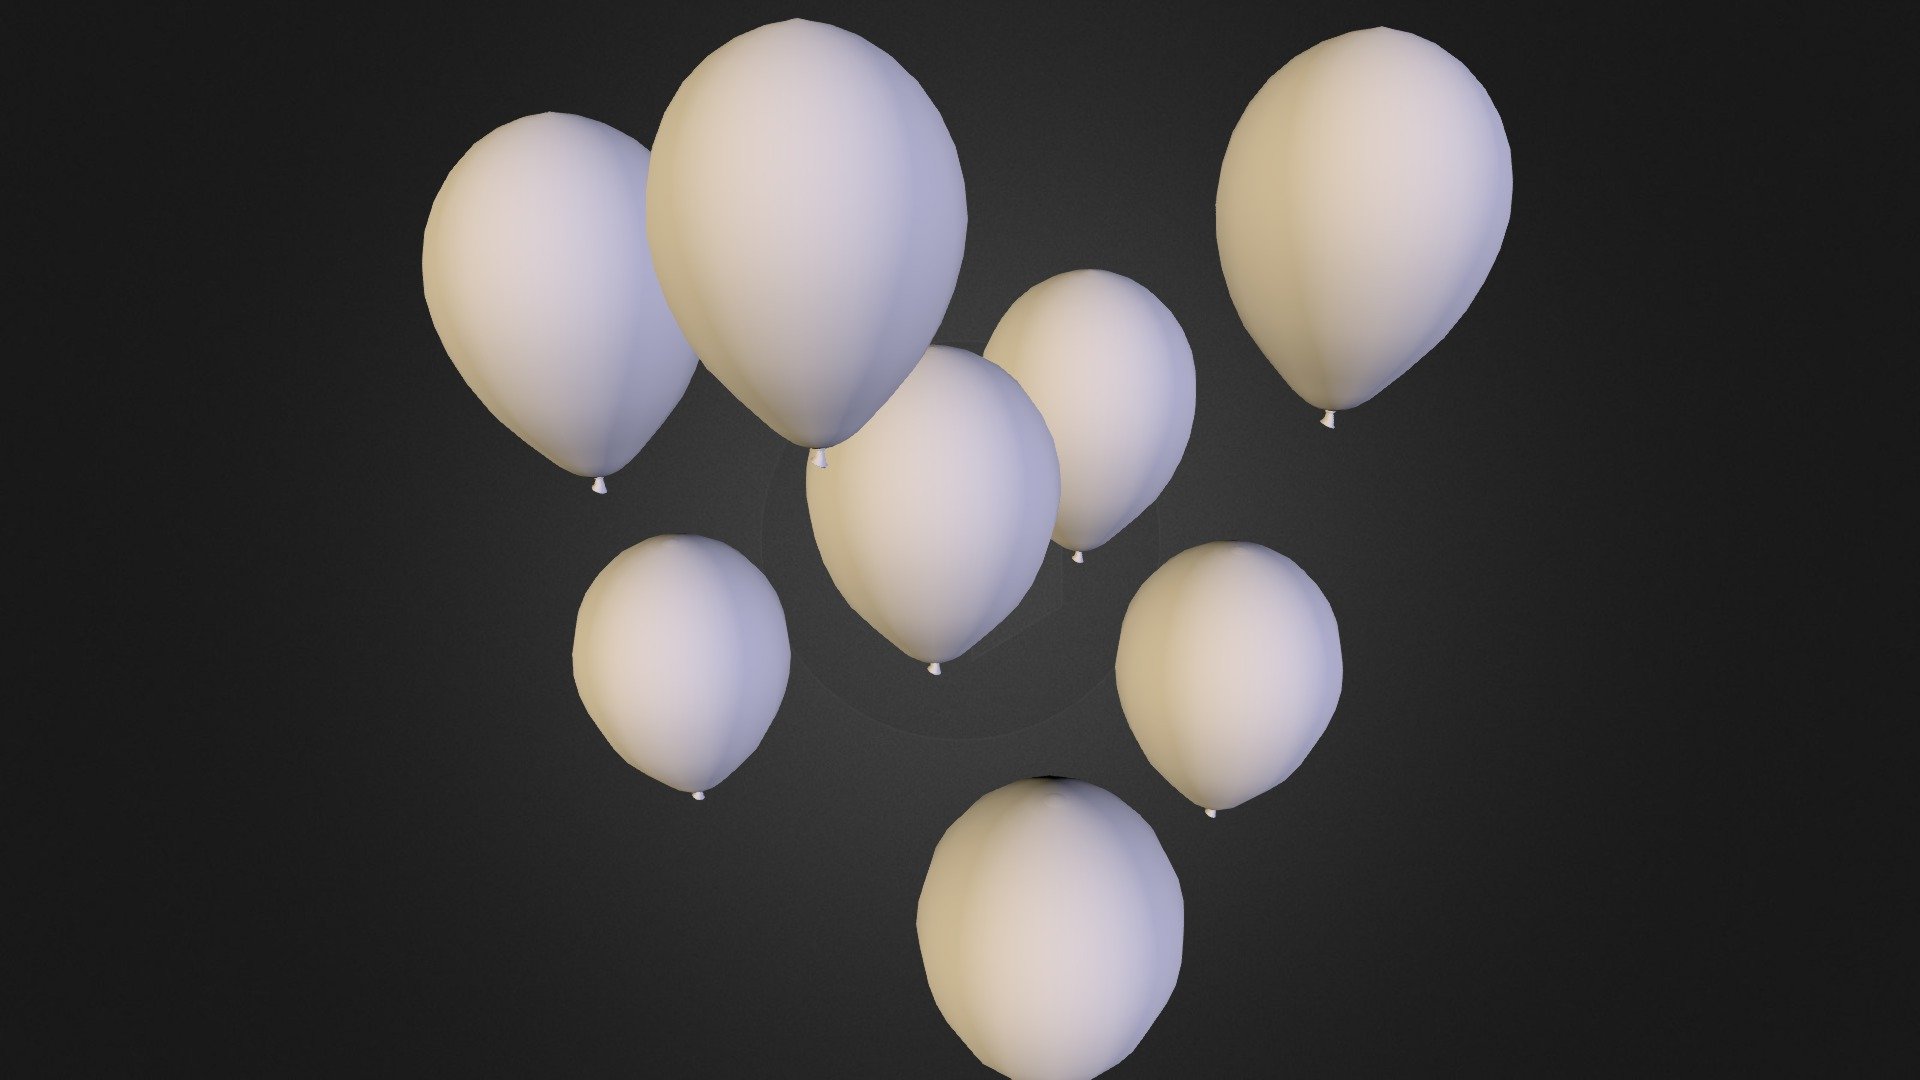 matalic balloons